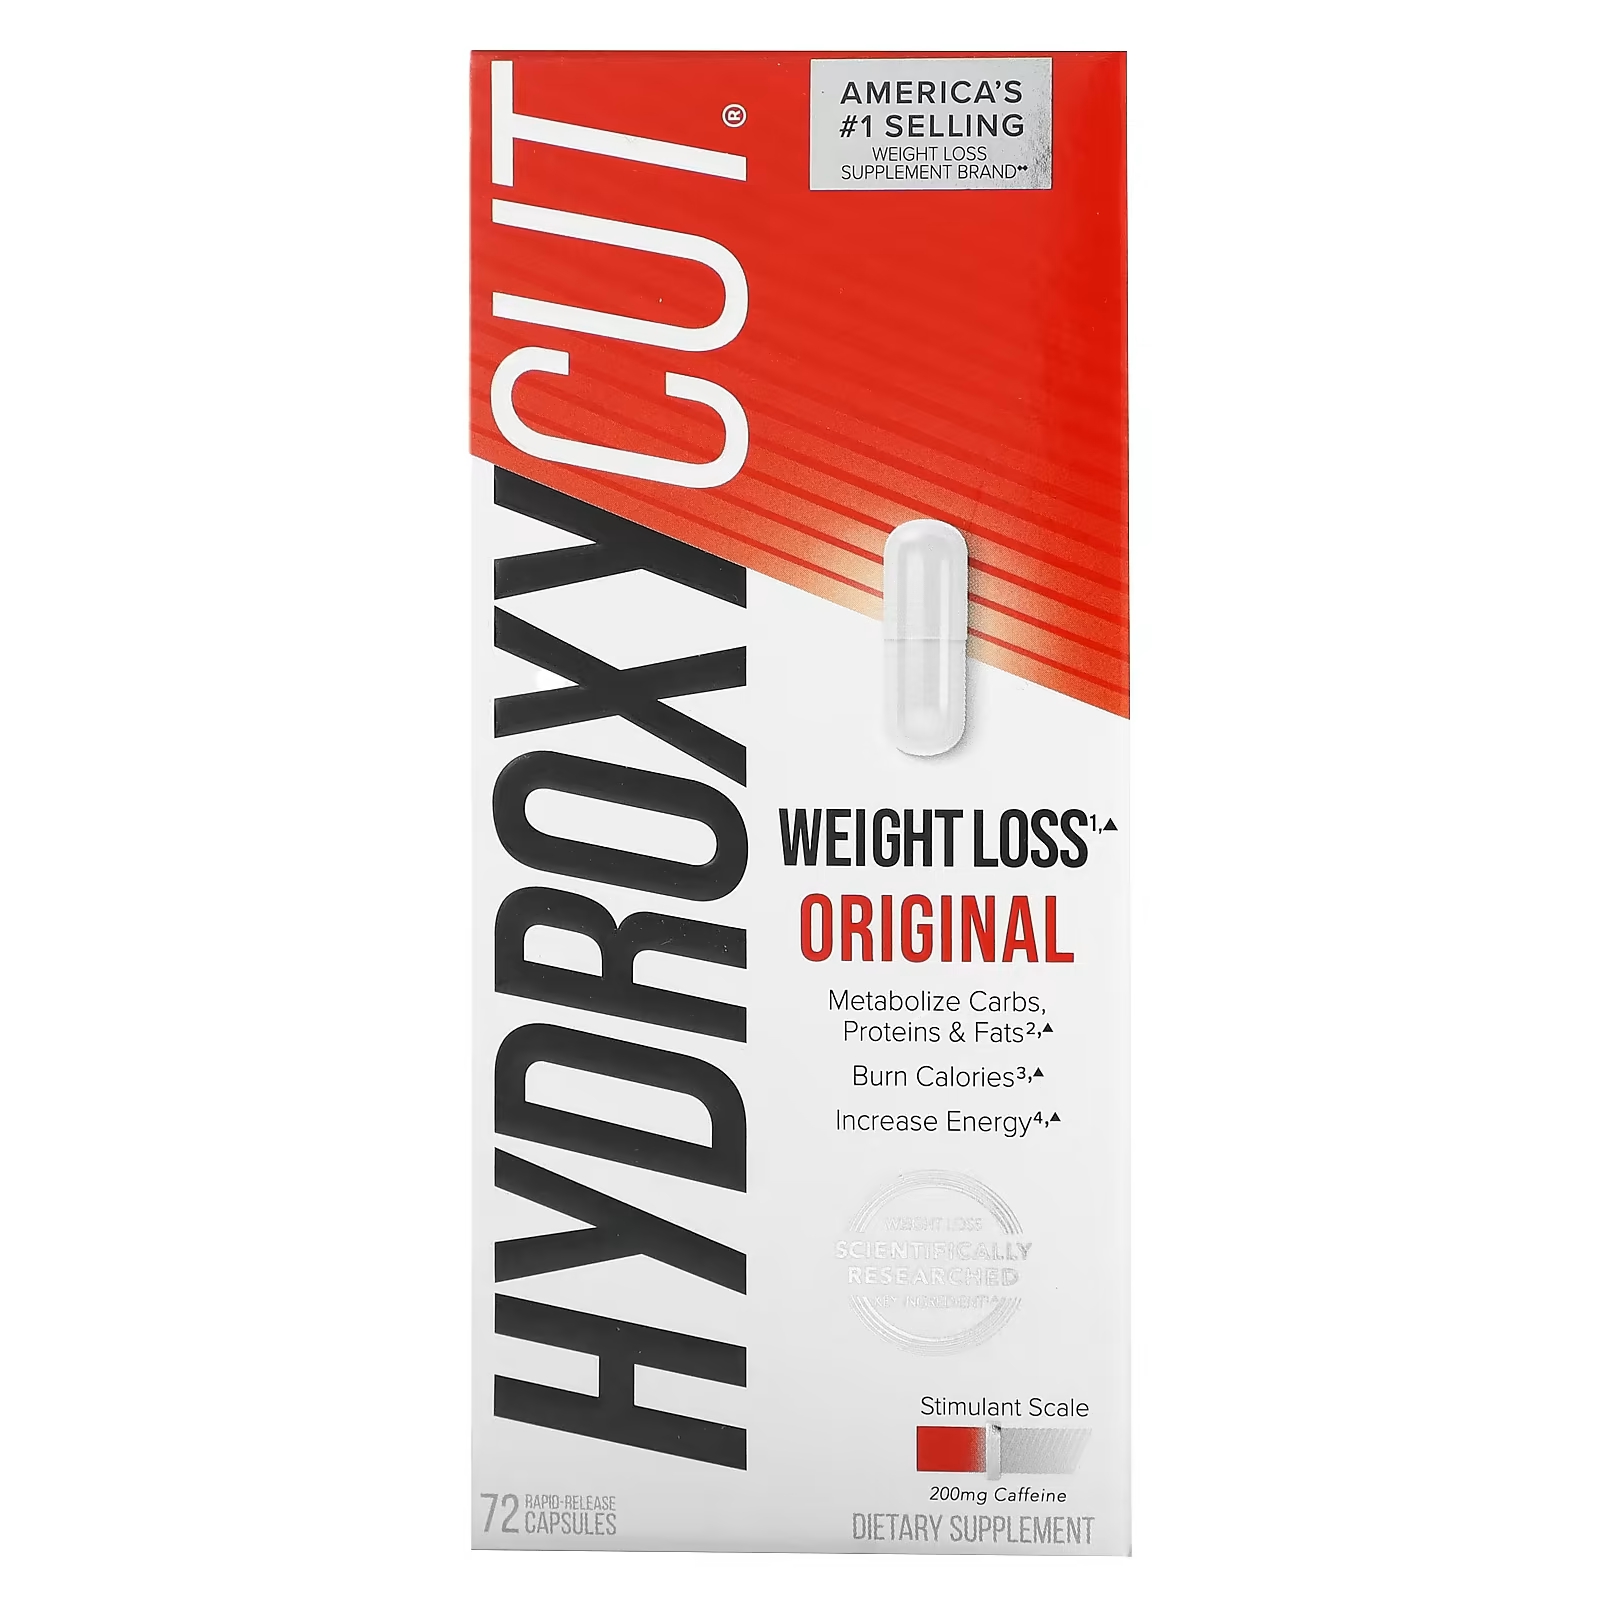 Пищевая добавка Hydroxycut потеря веса, 72 капсулы